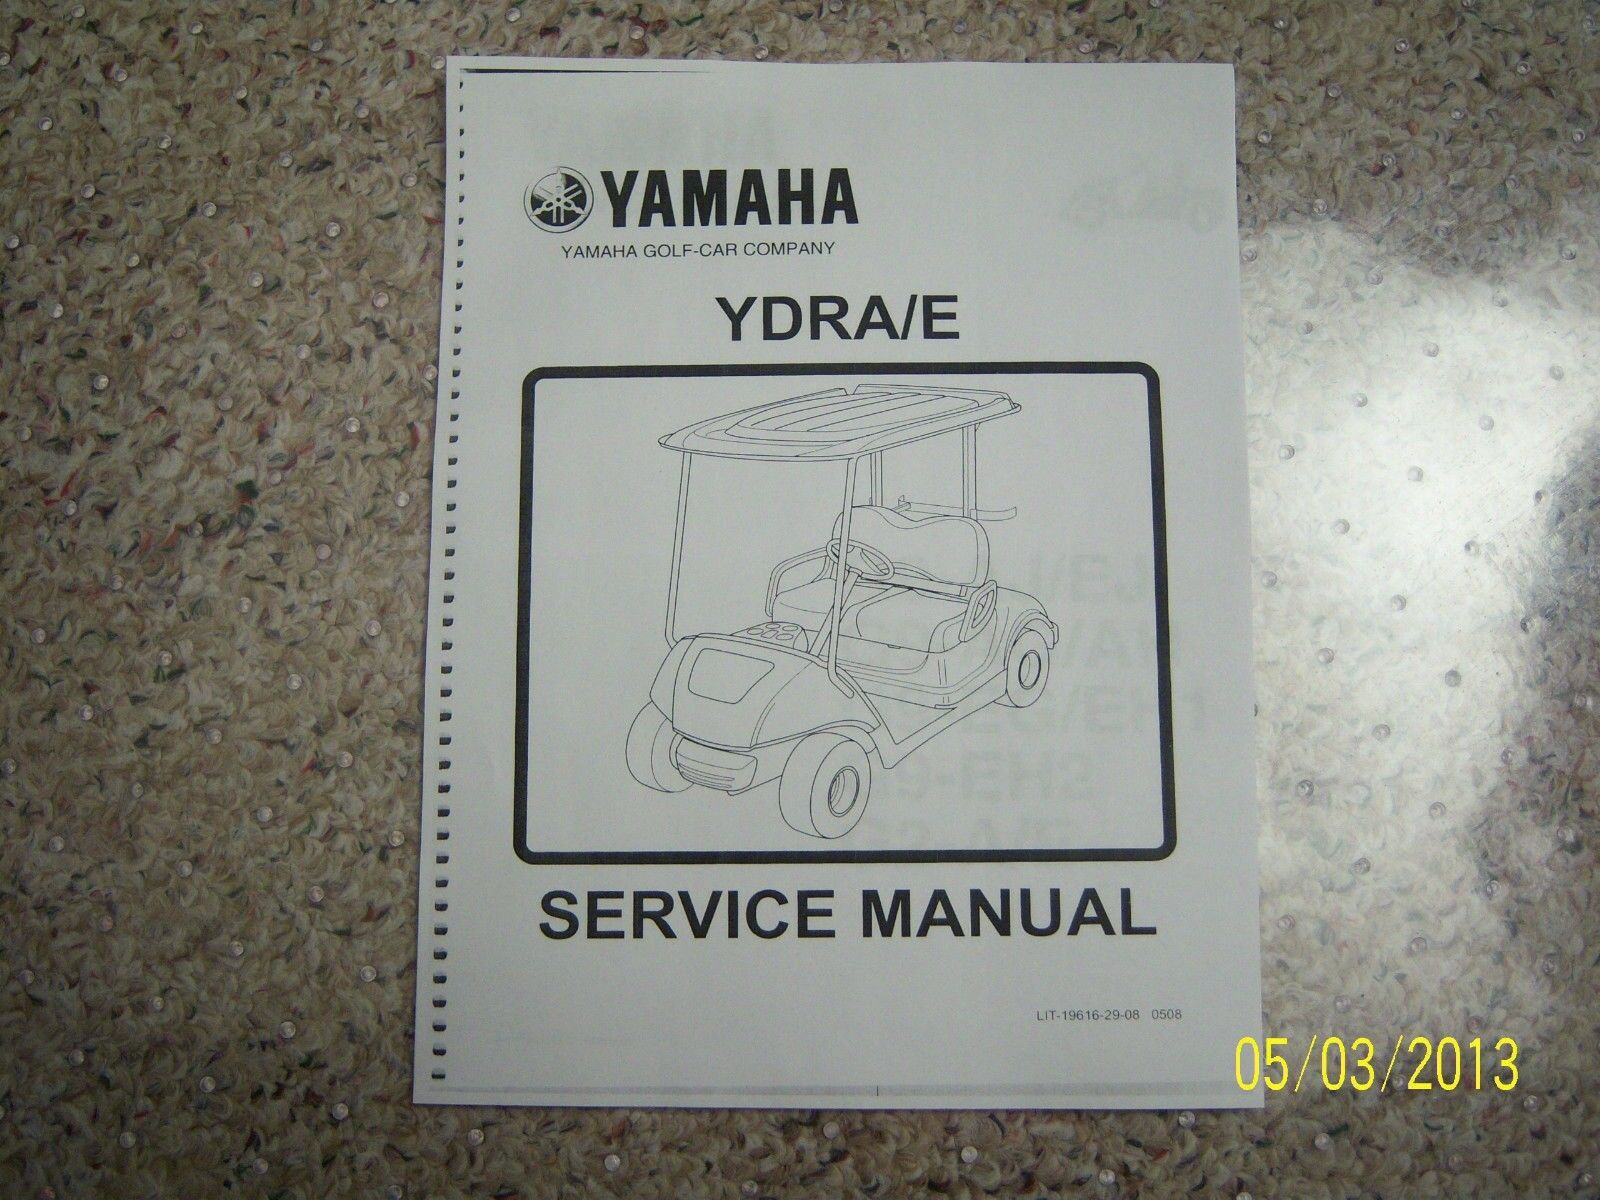 Yamaha g8 golf cart service manual